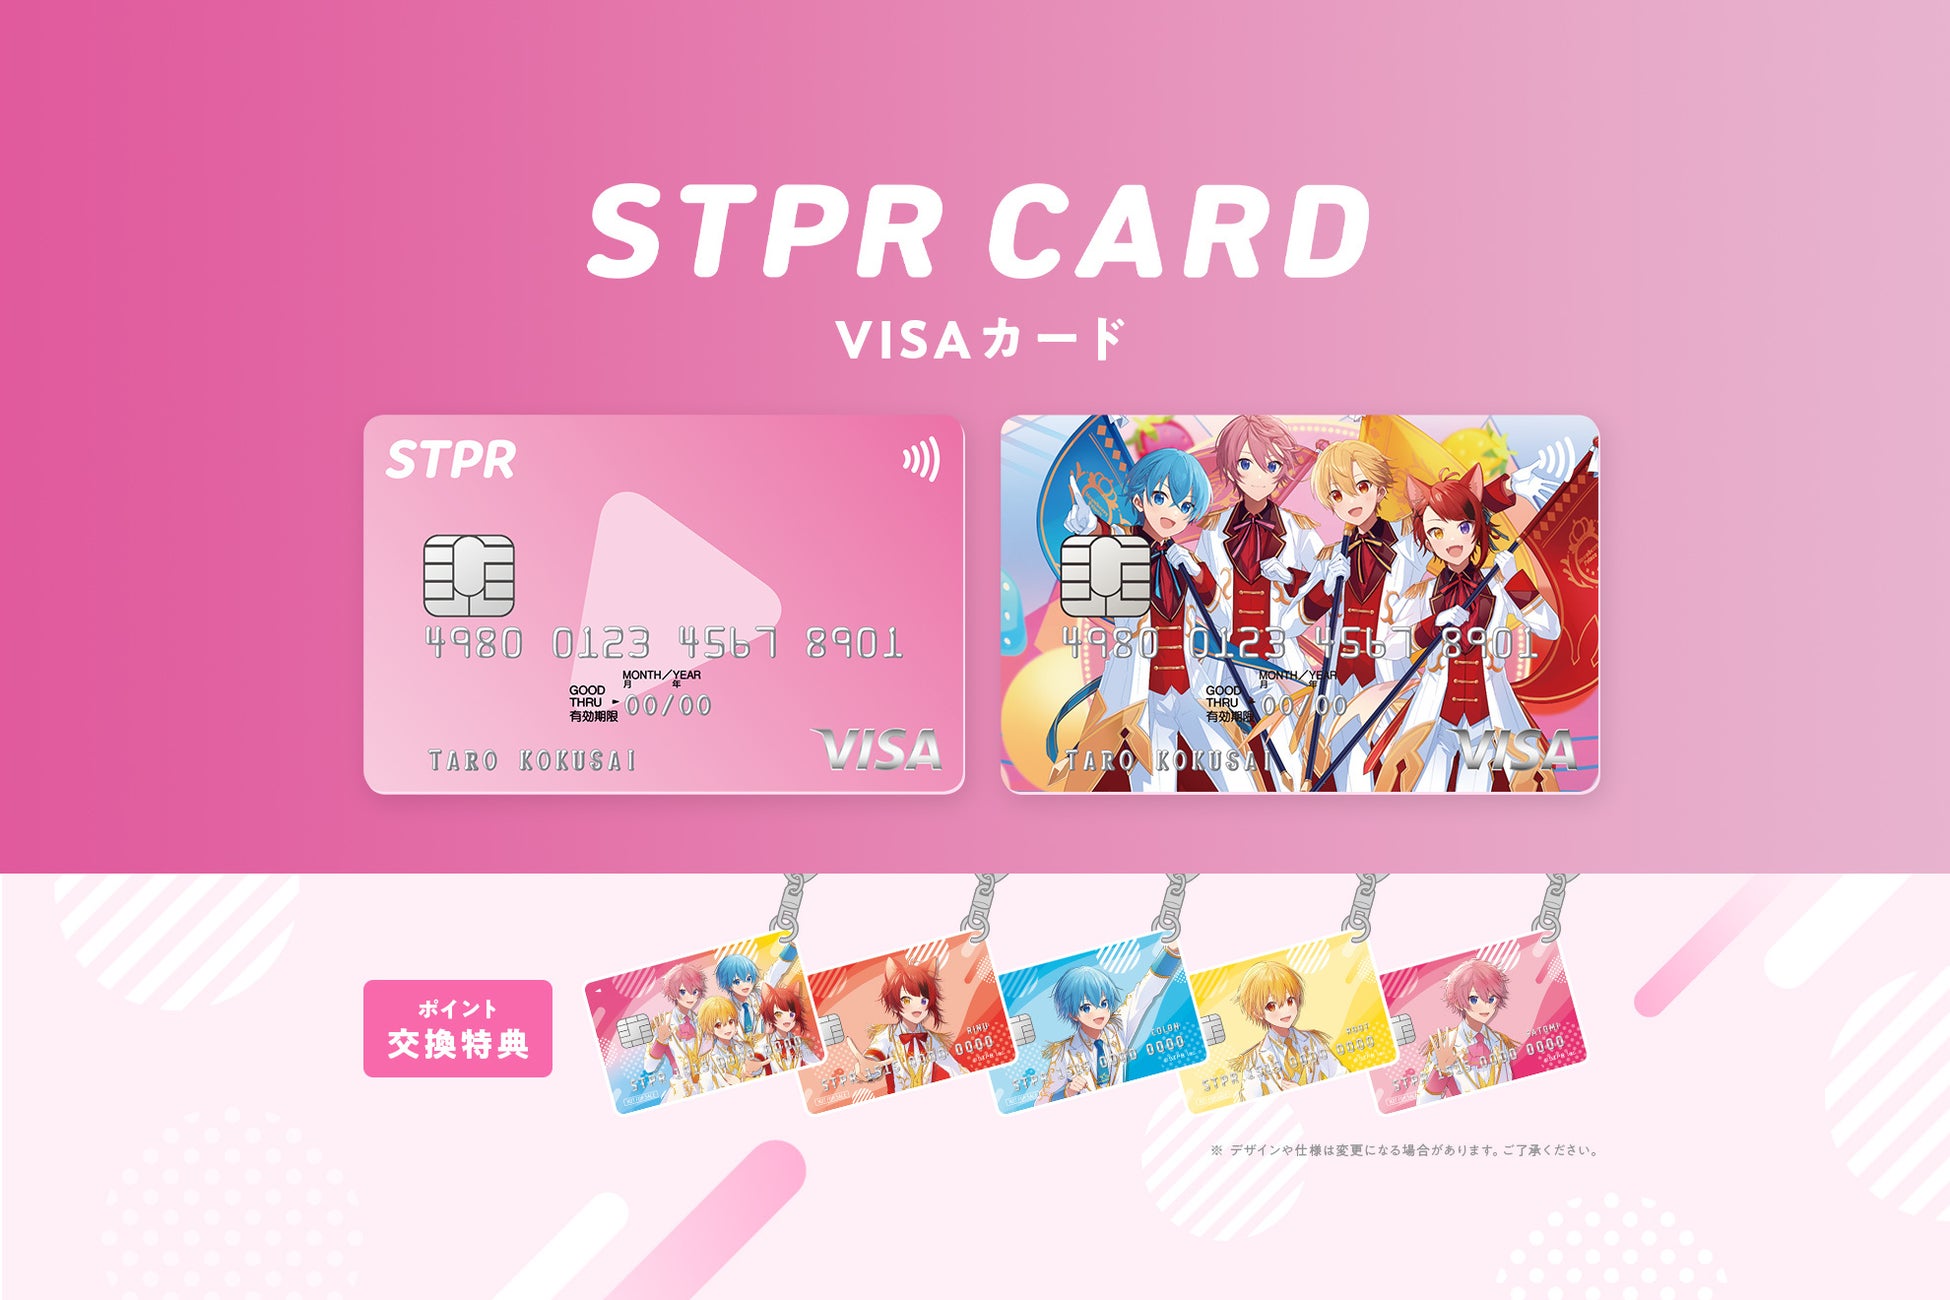 すとぷりデザイン「STPR CARD」の発行開始